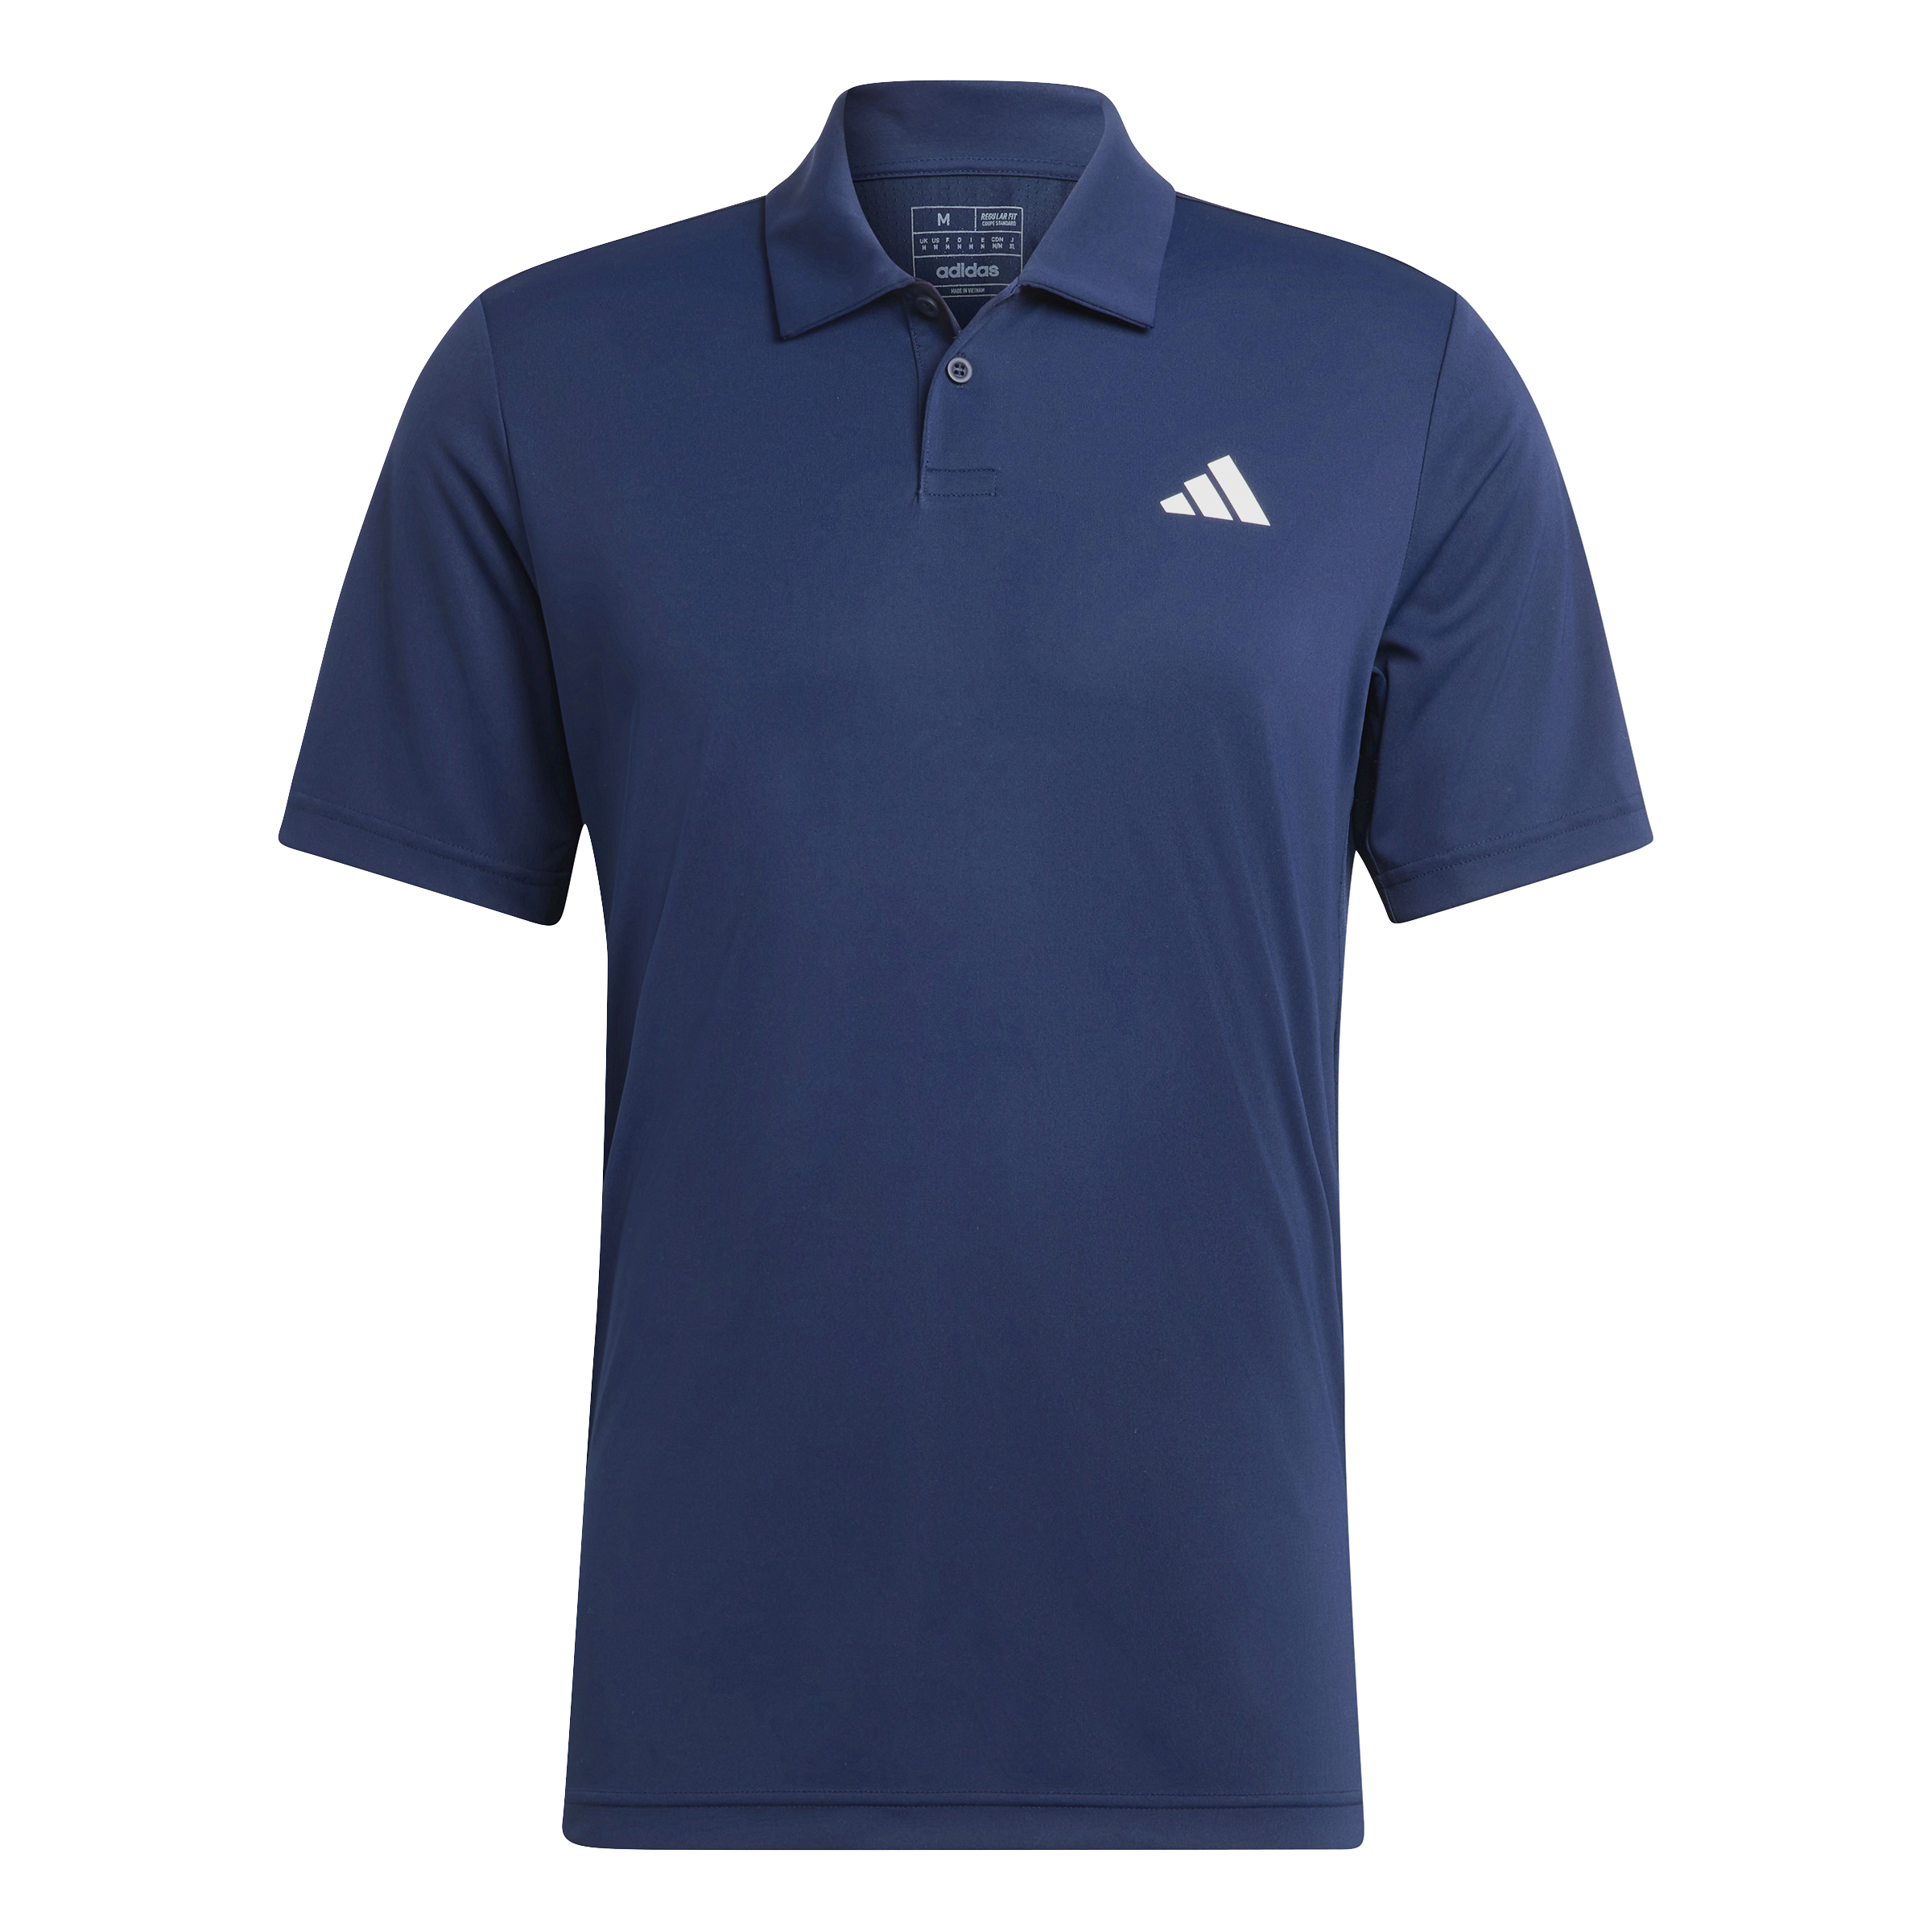 Adidas Club Polo Shirt (Navy) - L